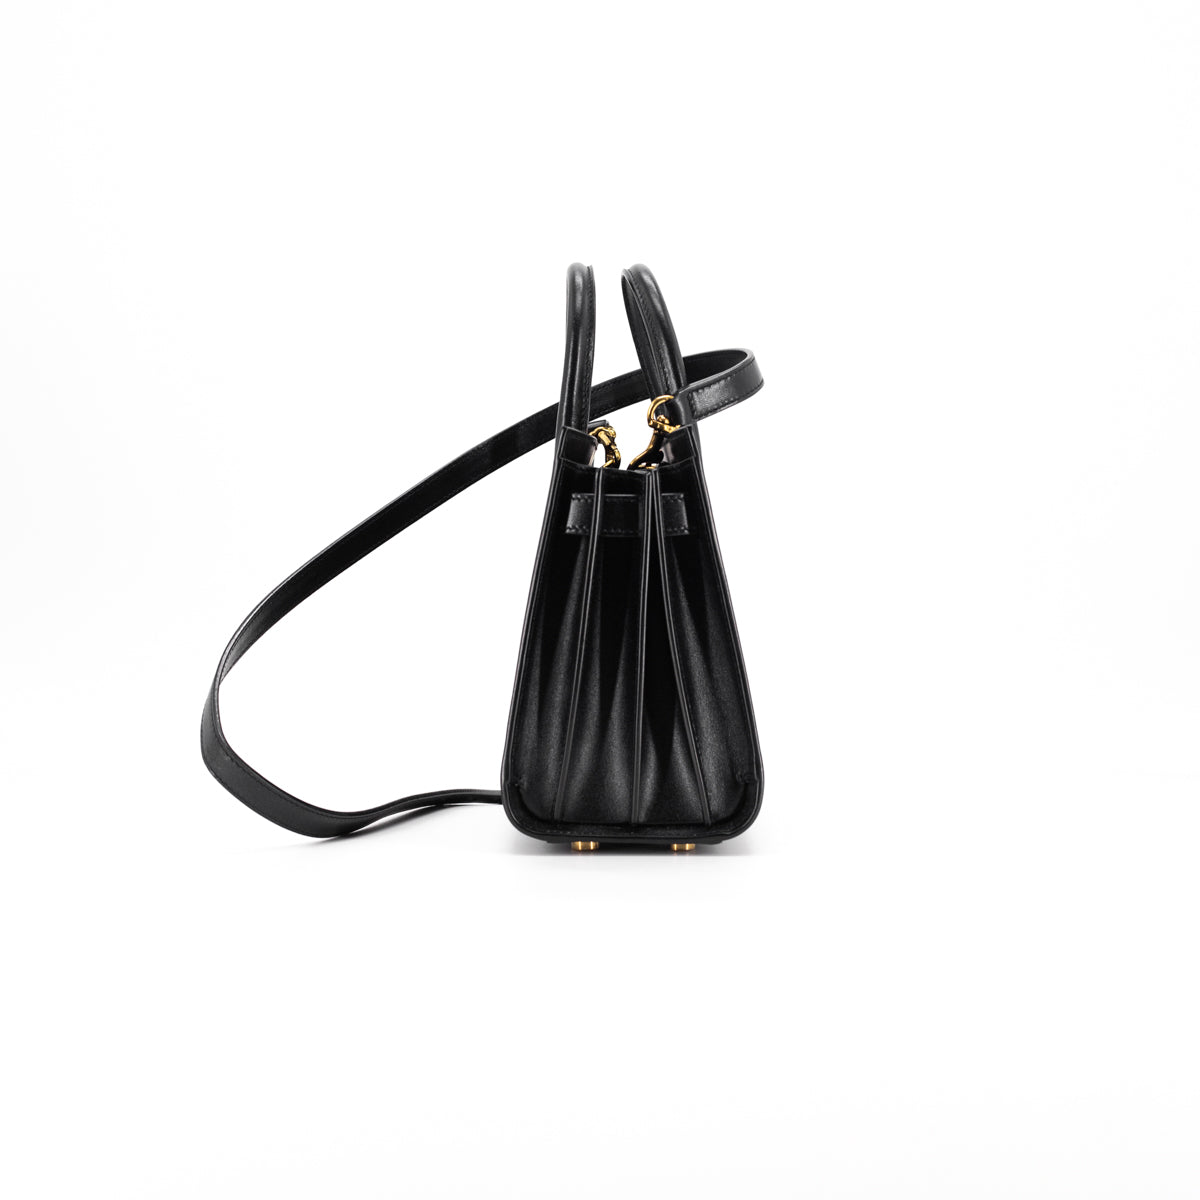 SAINT LAURENT: Sac De Jour boarded leather bag - Black  Saint Laurent  handbag 39203502G9W online at